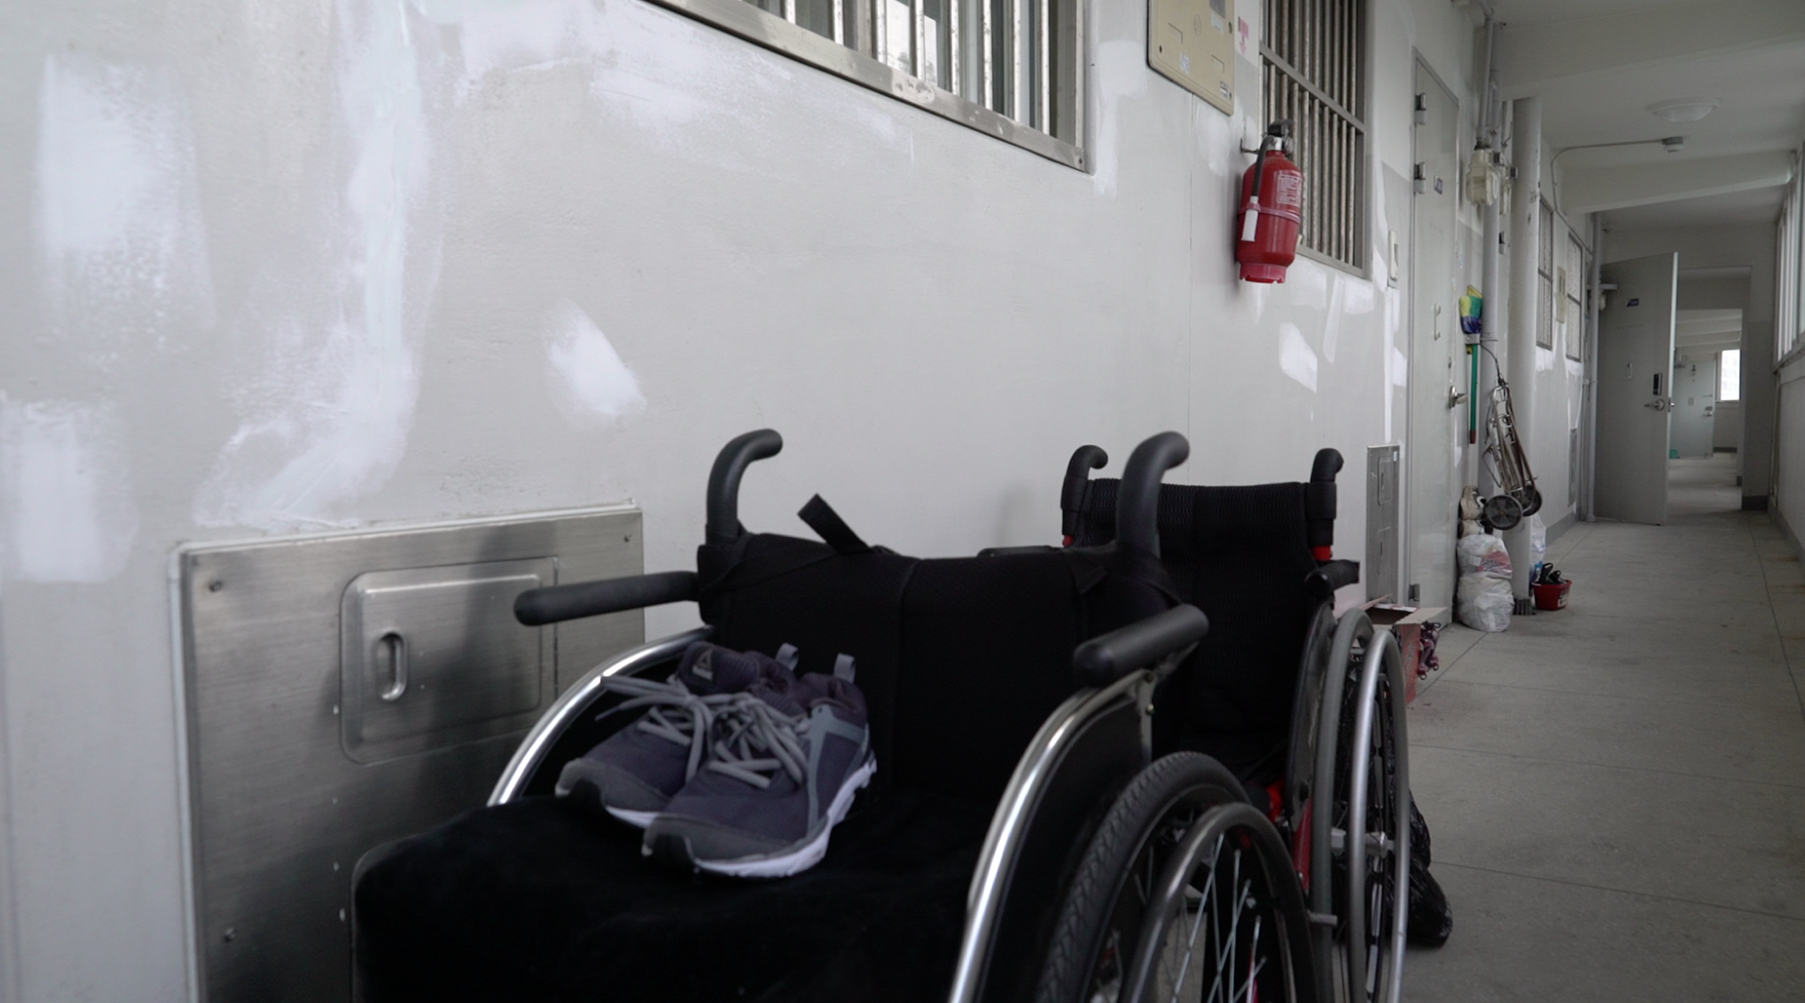 누구도 남겨두지 않는다 스틸컷2. 긴 아파트 복도 앞 쪽에 휠체어 두 개가 나란히 있다. 앞에 있는 휠체어 위에 남색 운동화 한켤레가 놓여 있다.